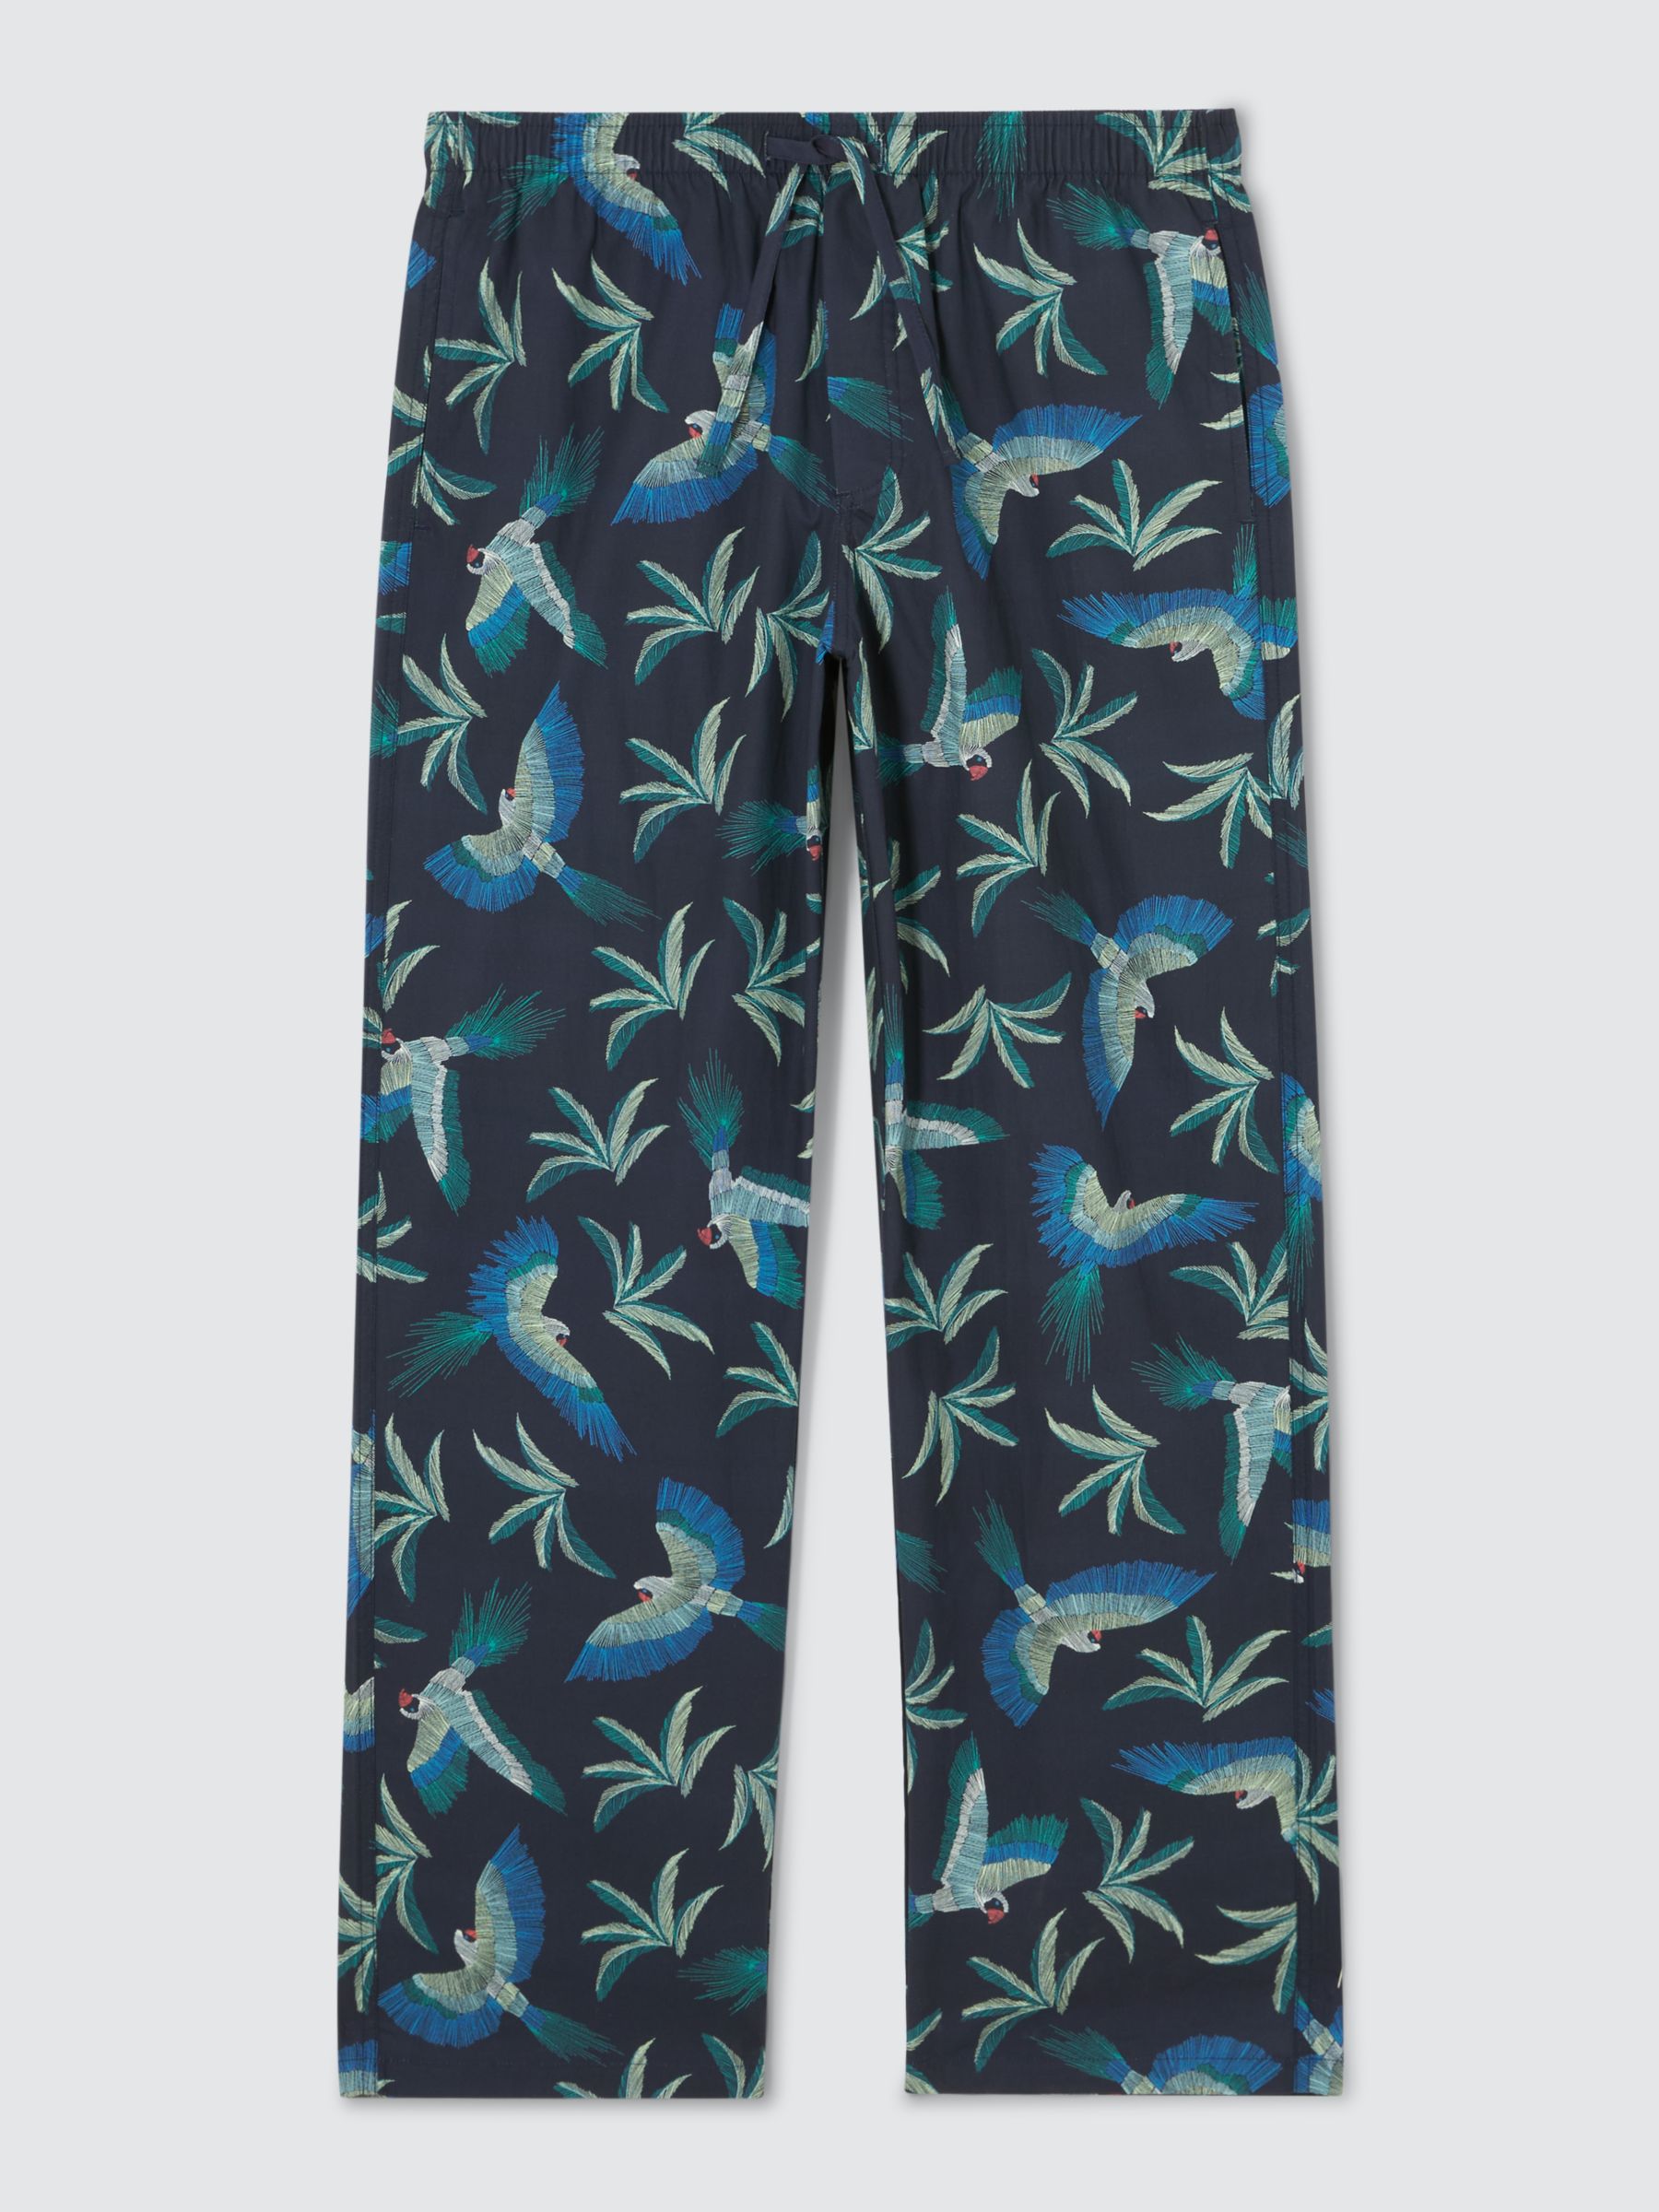 John Lewis Organic Cotton Parrot Print Lounge Pants, Navy/Multi, M